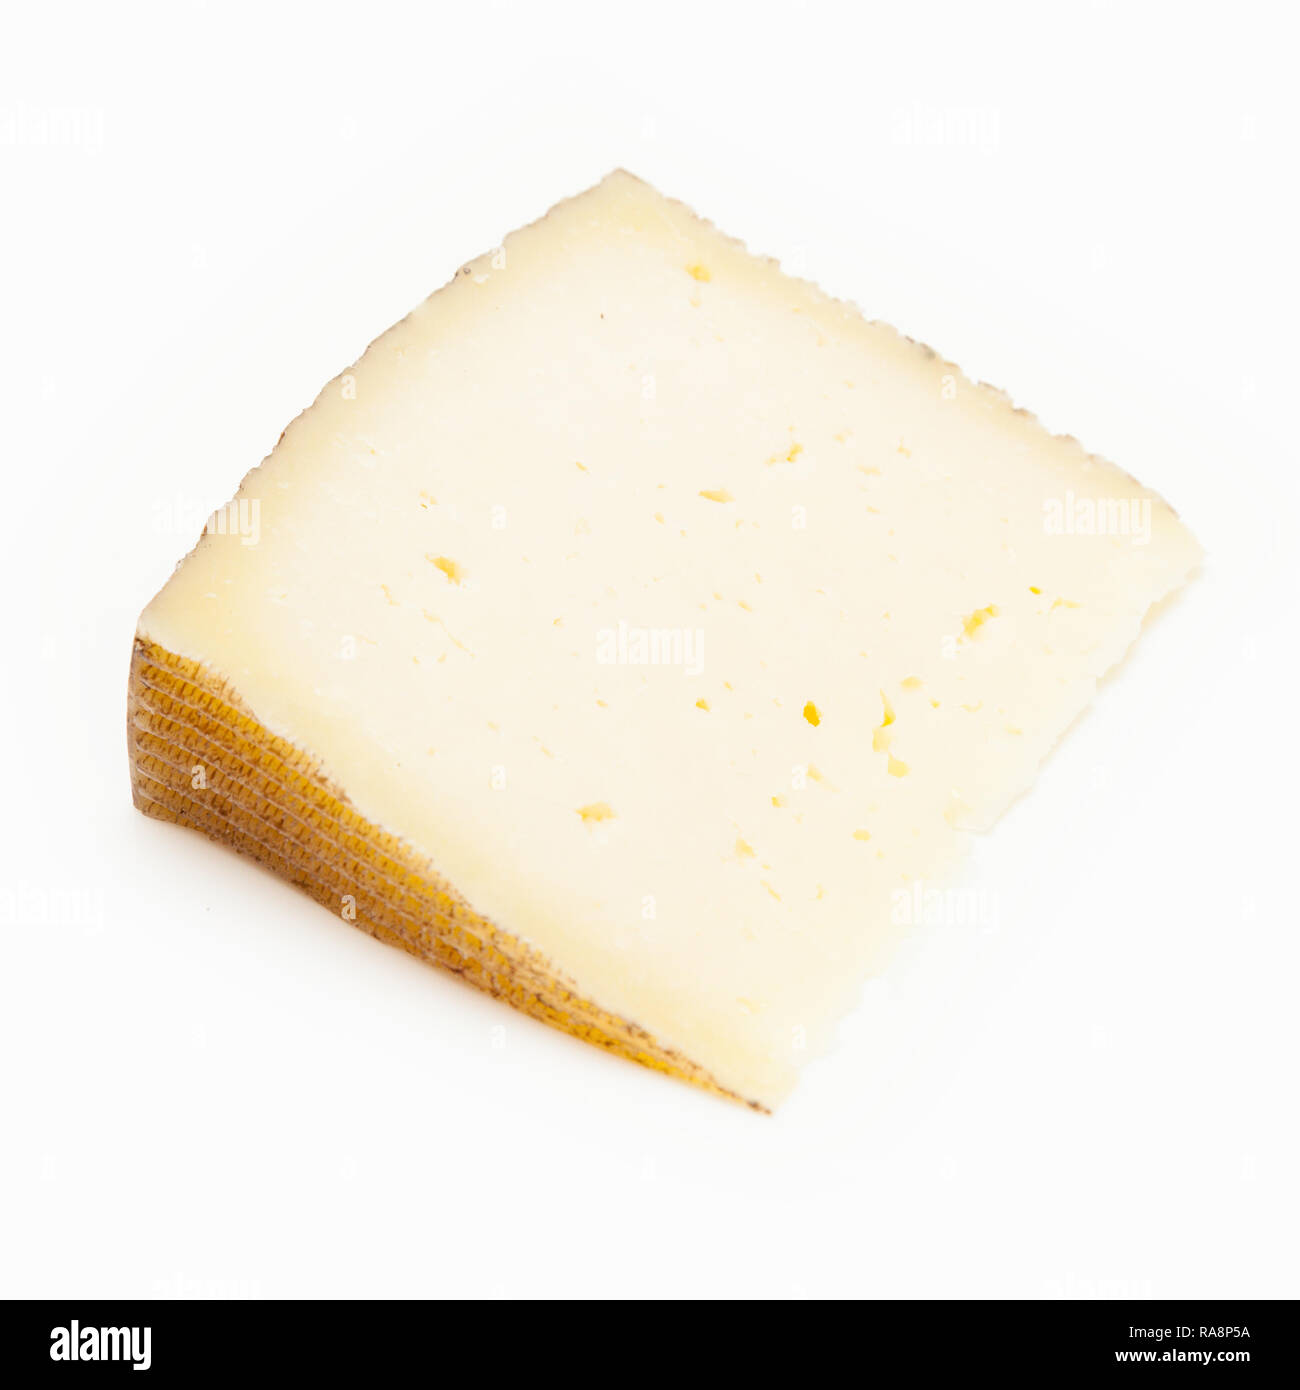 Castellano Manchego queso hecho con leche de oveja tiene una textura firme y cremosa, aislado en un fondo blanco studio. Foto de stock